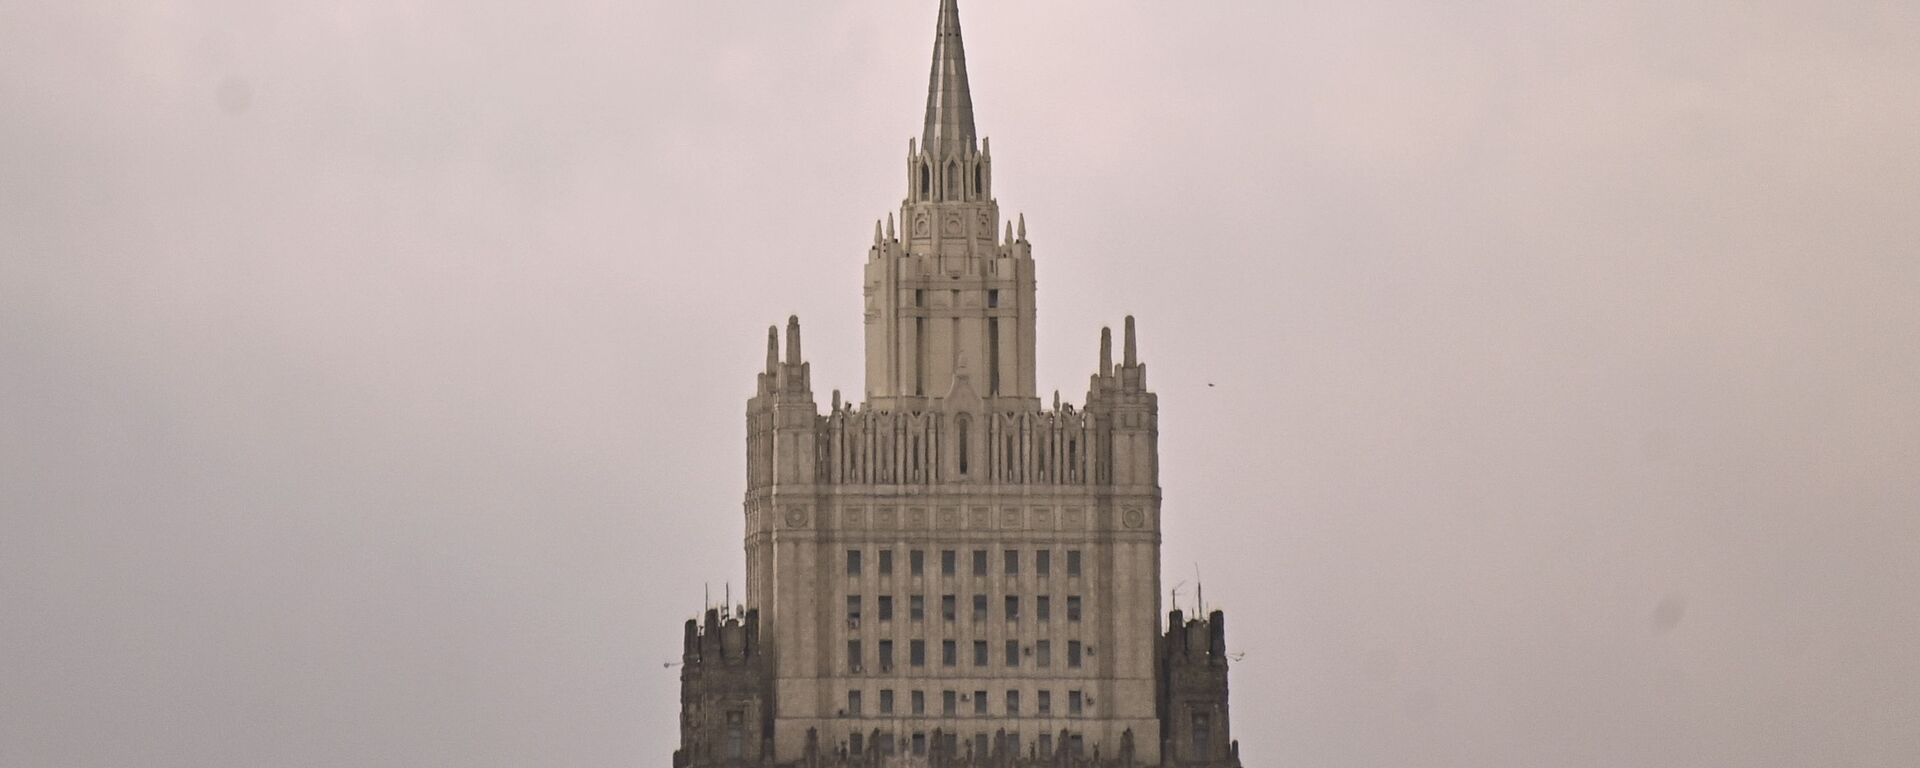 Zgrada Ministarstva spoljnih poslova Rusije u Moskvi - Sputnik Srbija, 1920, 09.03.2021